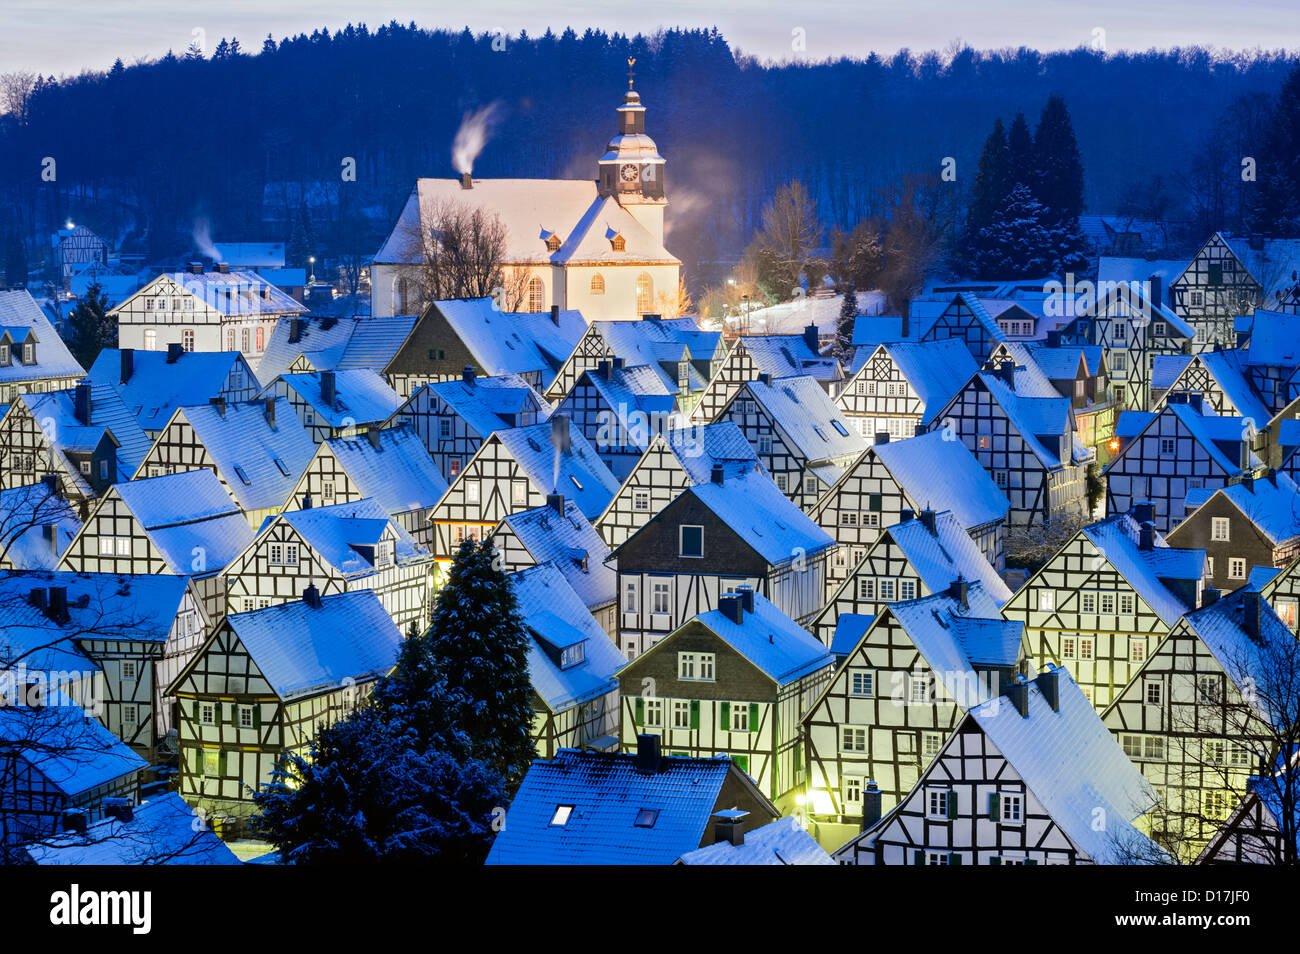 Vue d'hiver sur les vieilles maisons enneigées de Freudenberg, Siegerland Allemagne Banque D'Images